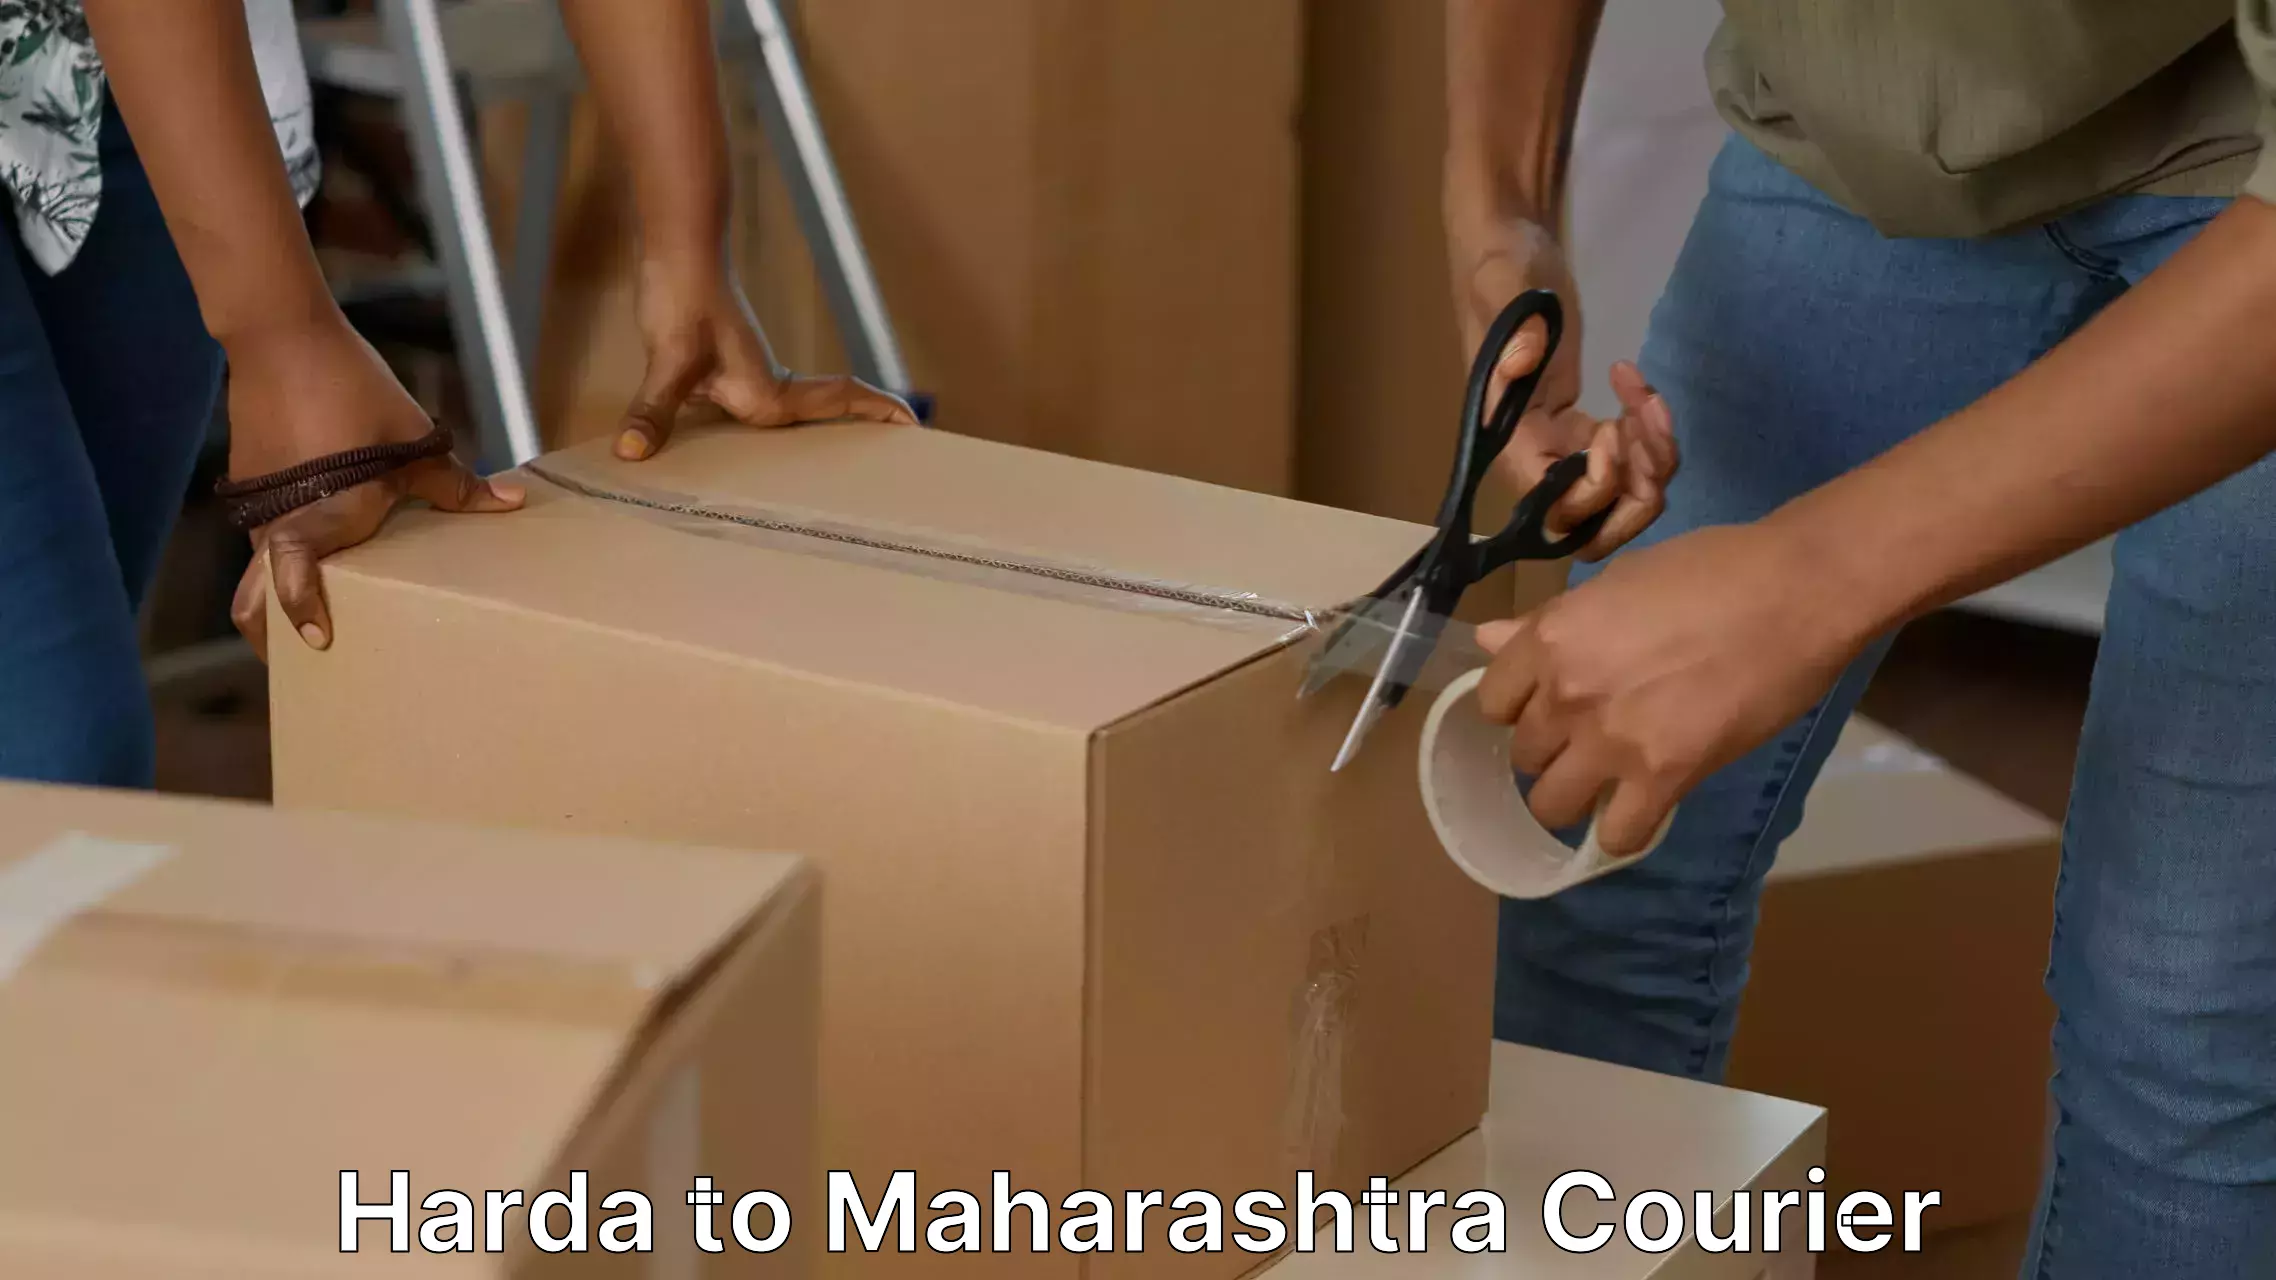 Household logistics services Harda to Maharashtra